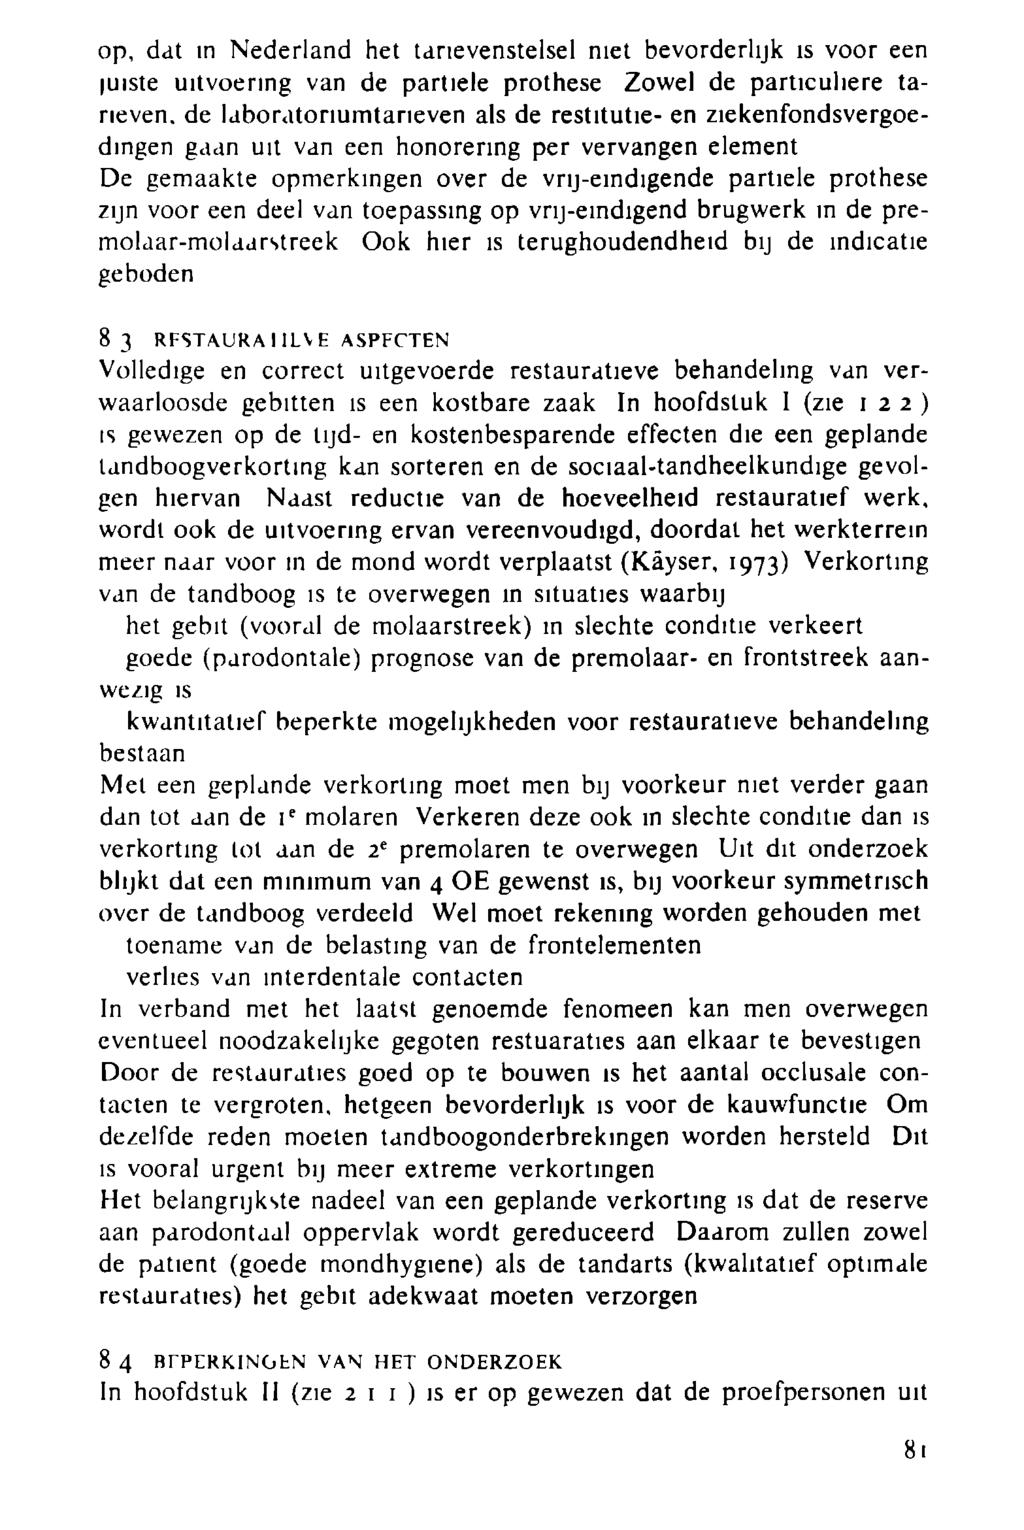 op, dat in Nederland het tarievenstelsel niet bevorderlijk is voor een juiste uitvoering van de partiele prothese Zowel de particuliere tarieven.